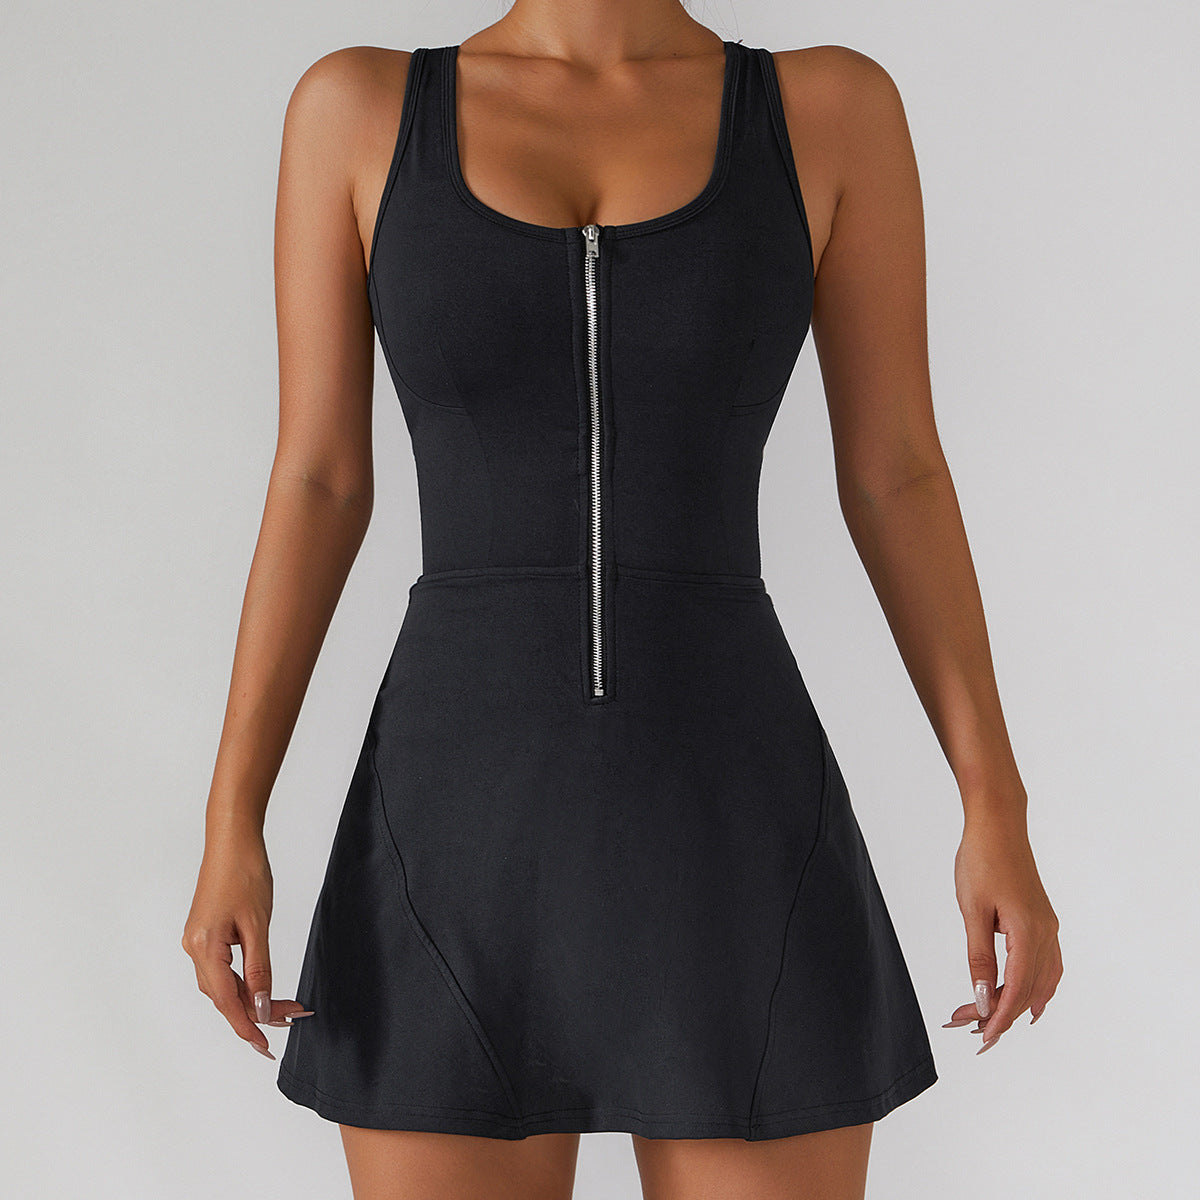 Wholesale Front Zipper Girl Tennis Dress